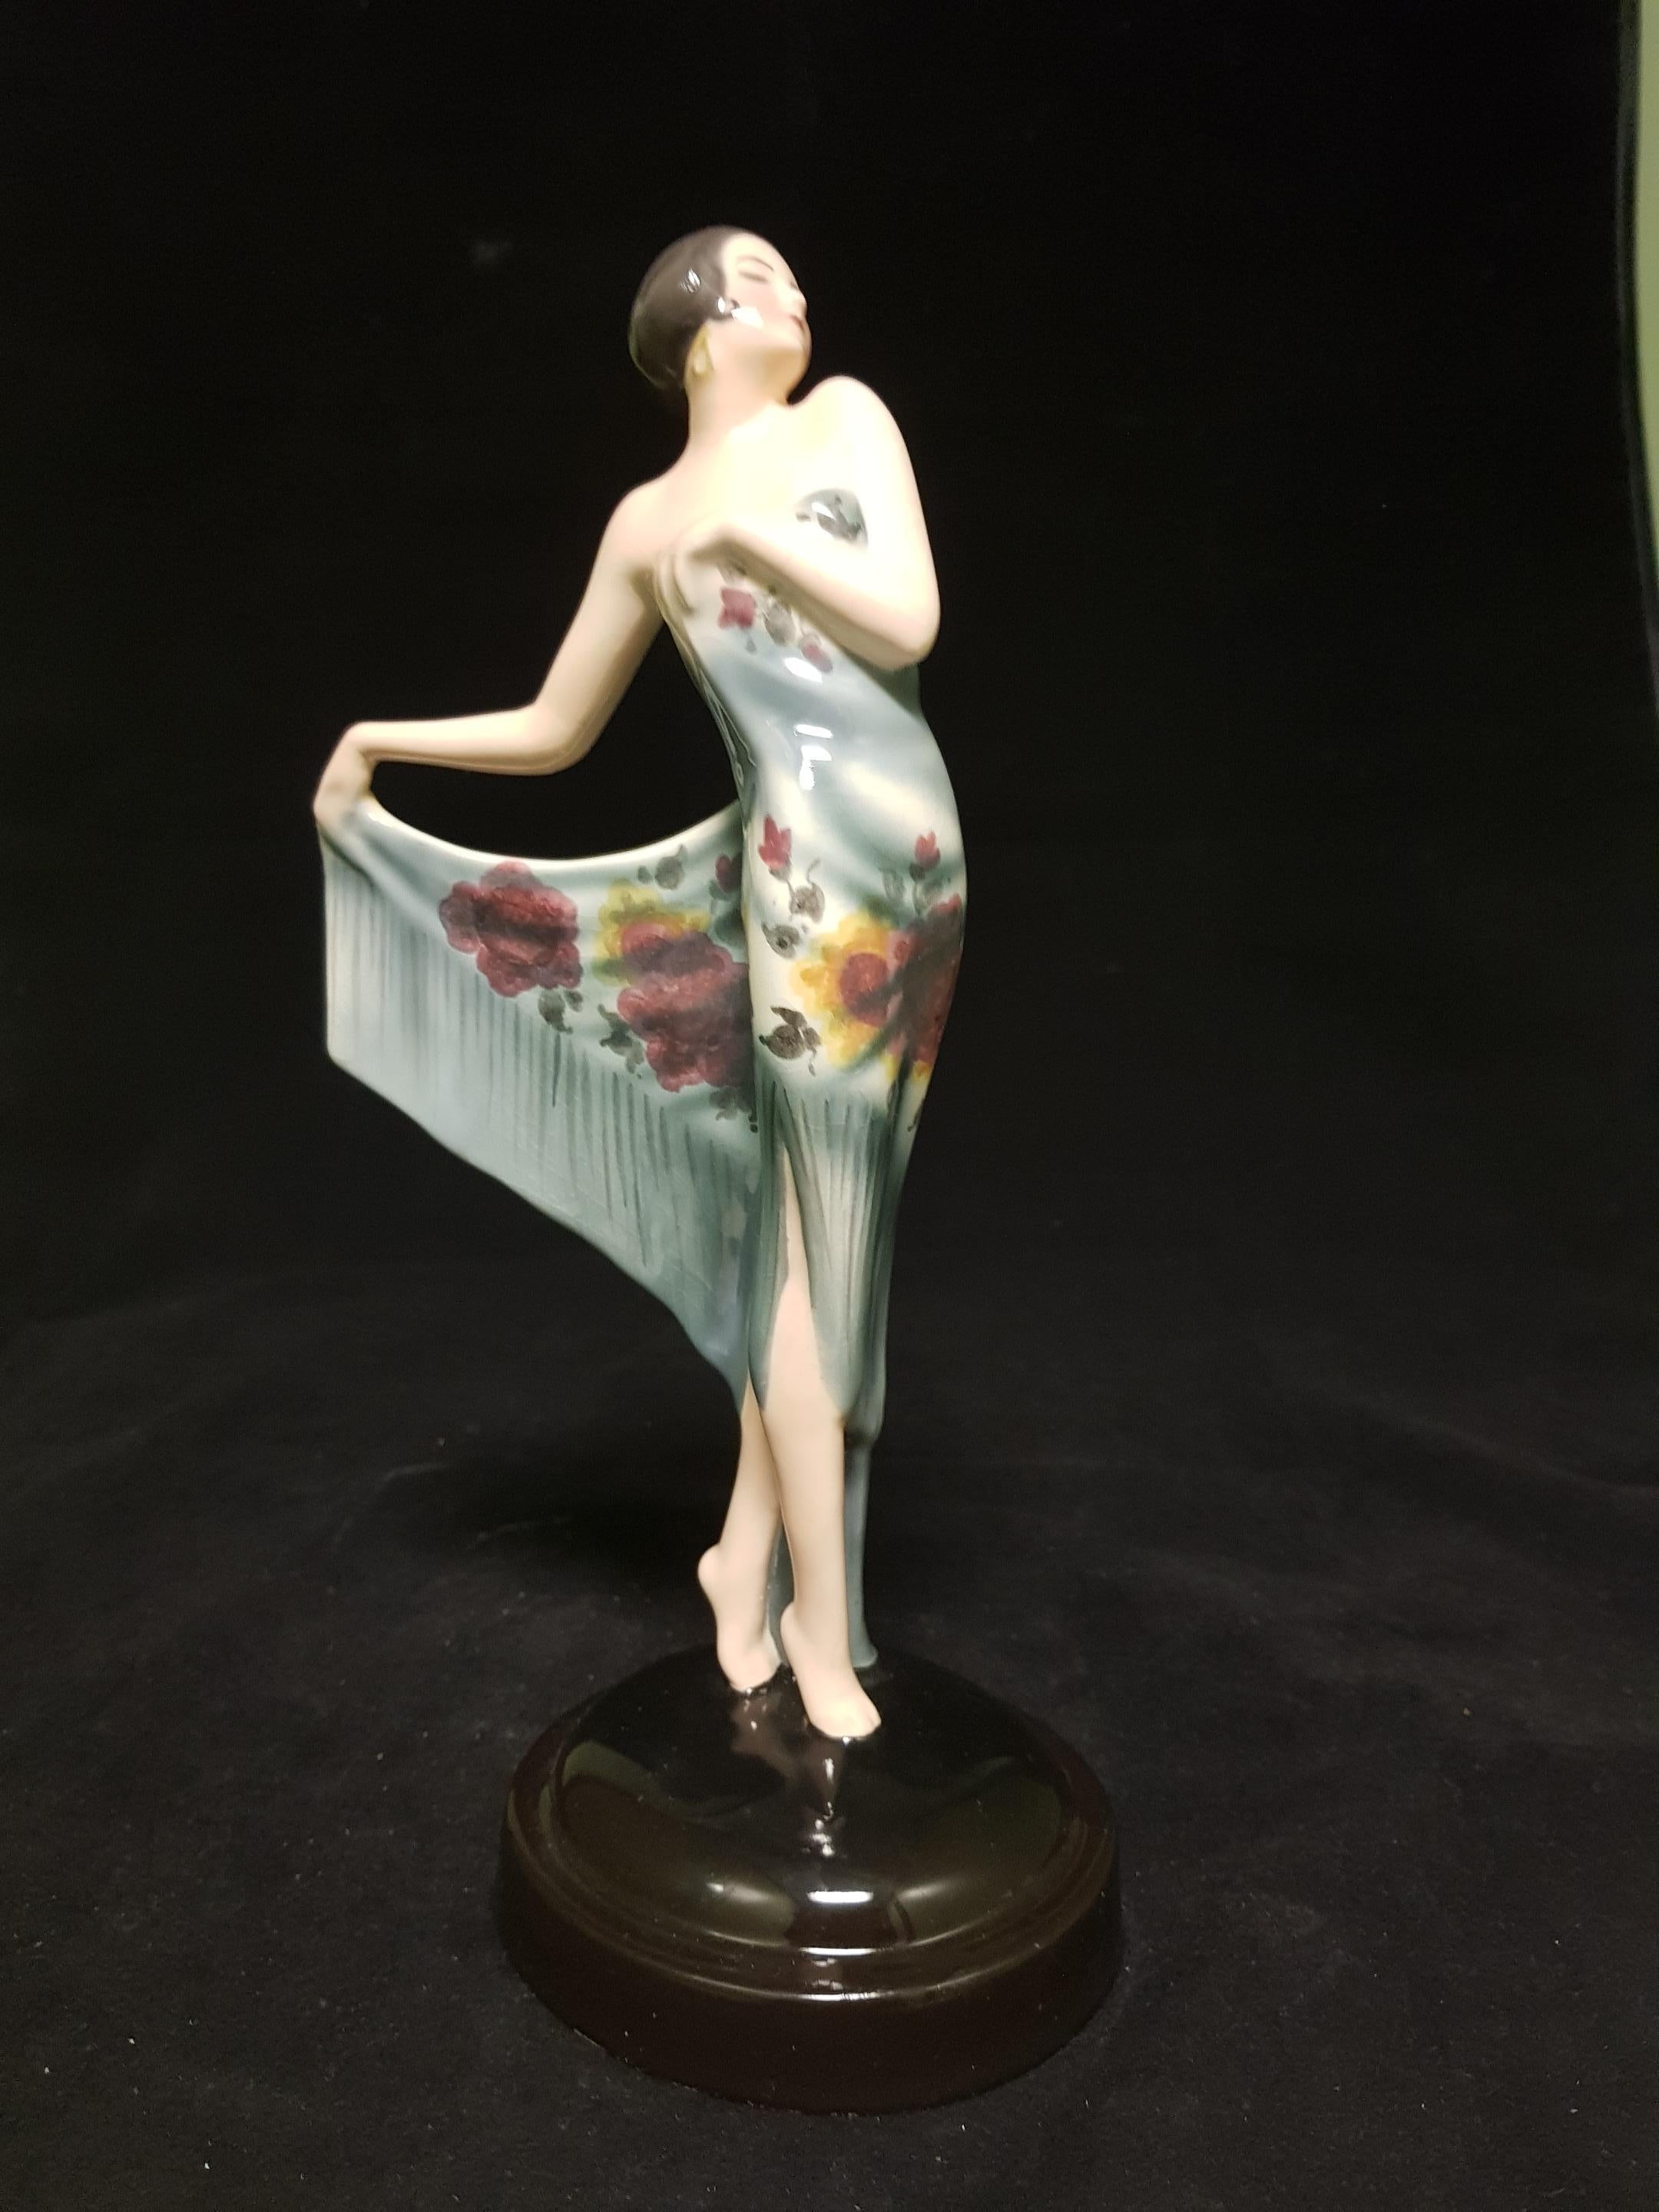 Goldscheider, Made in Austria, 1928: elegant spanischer dancer ceramic called 